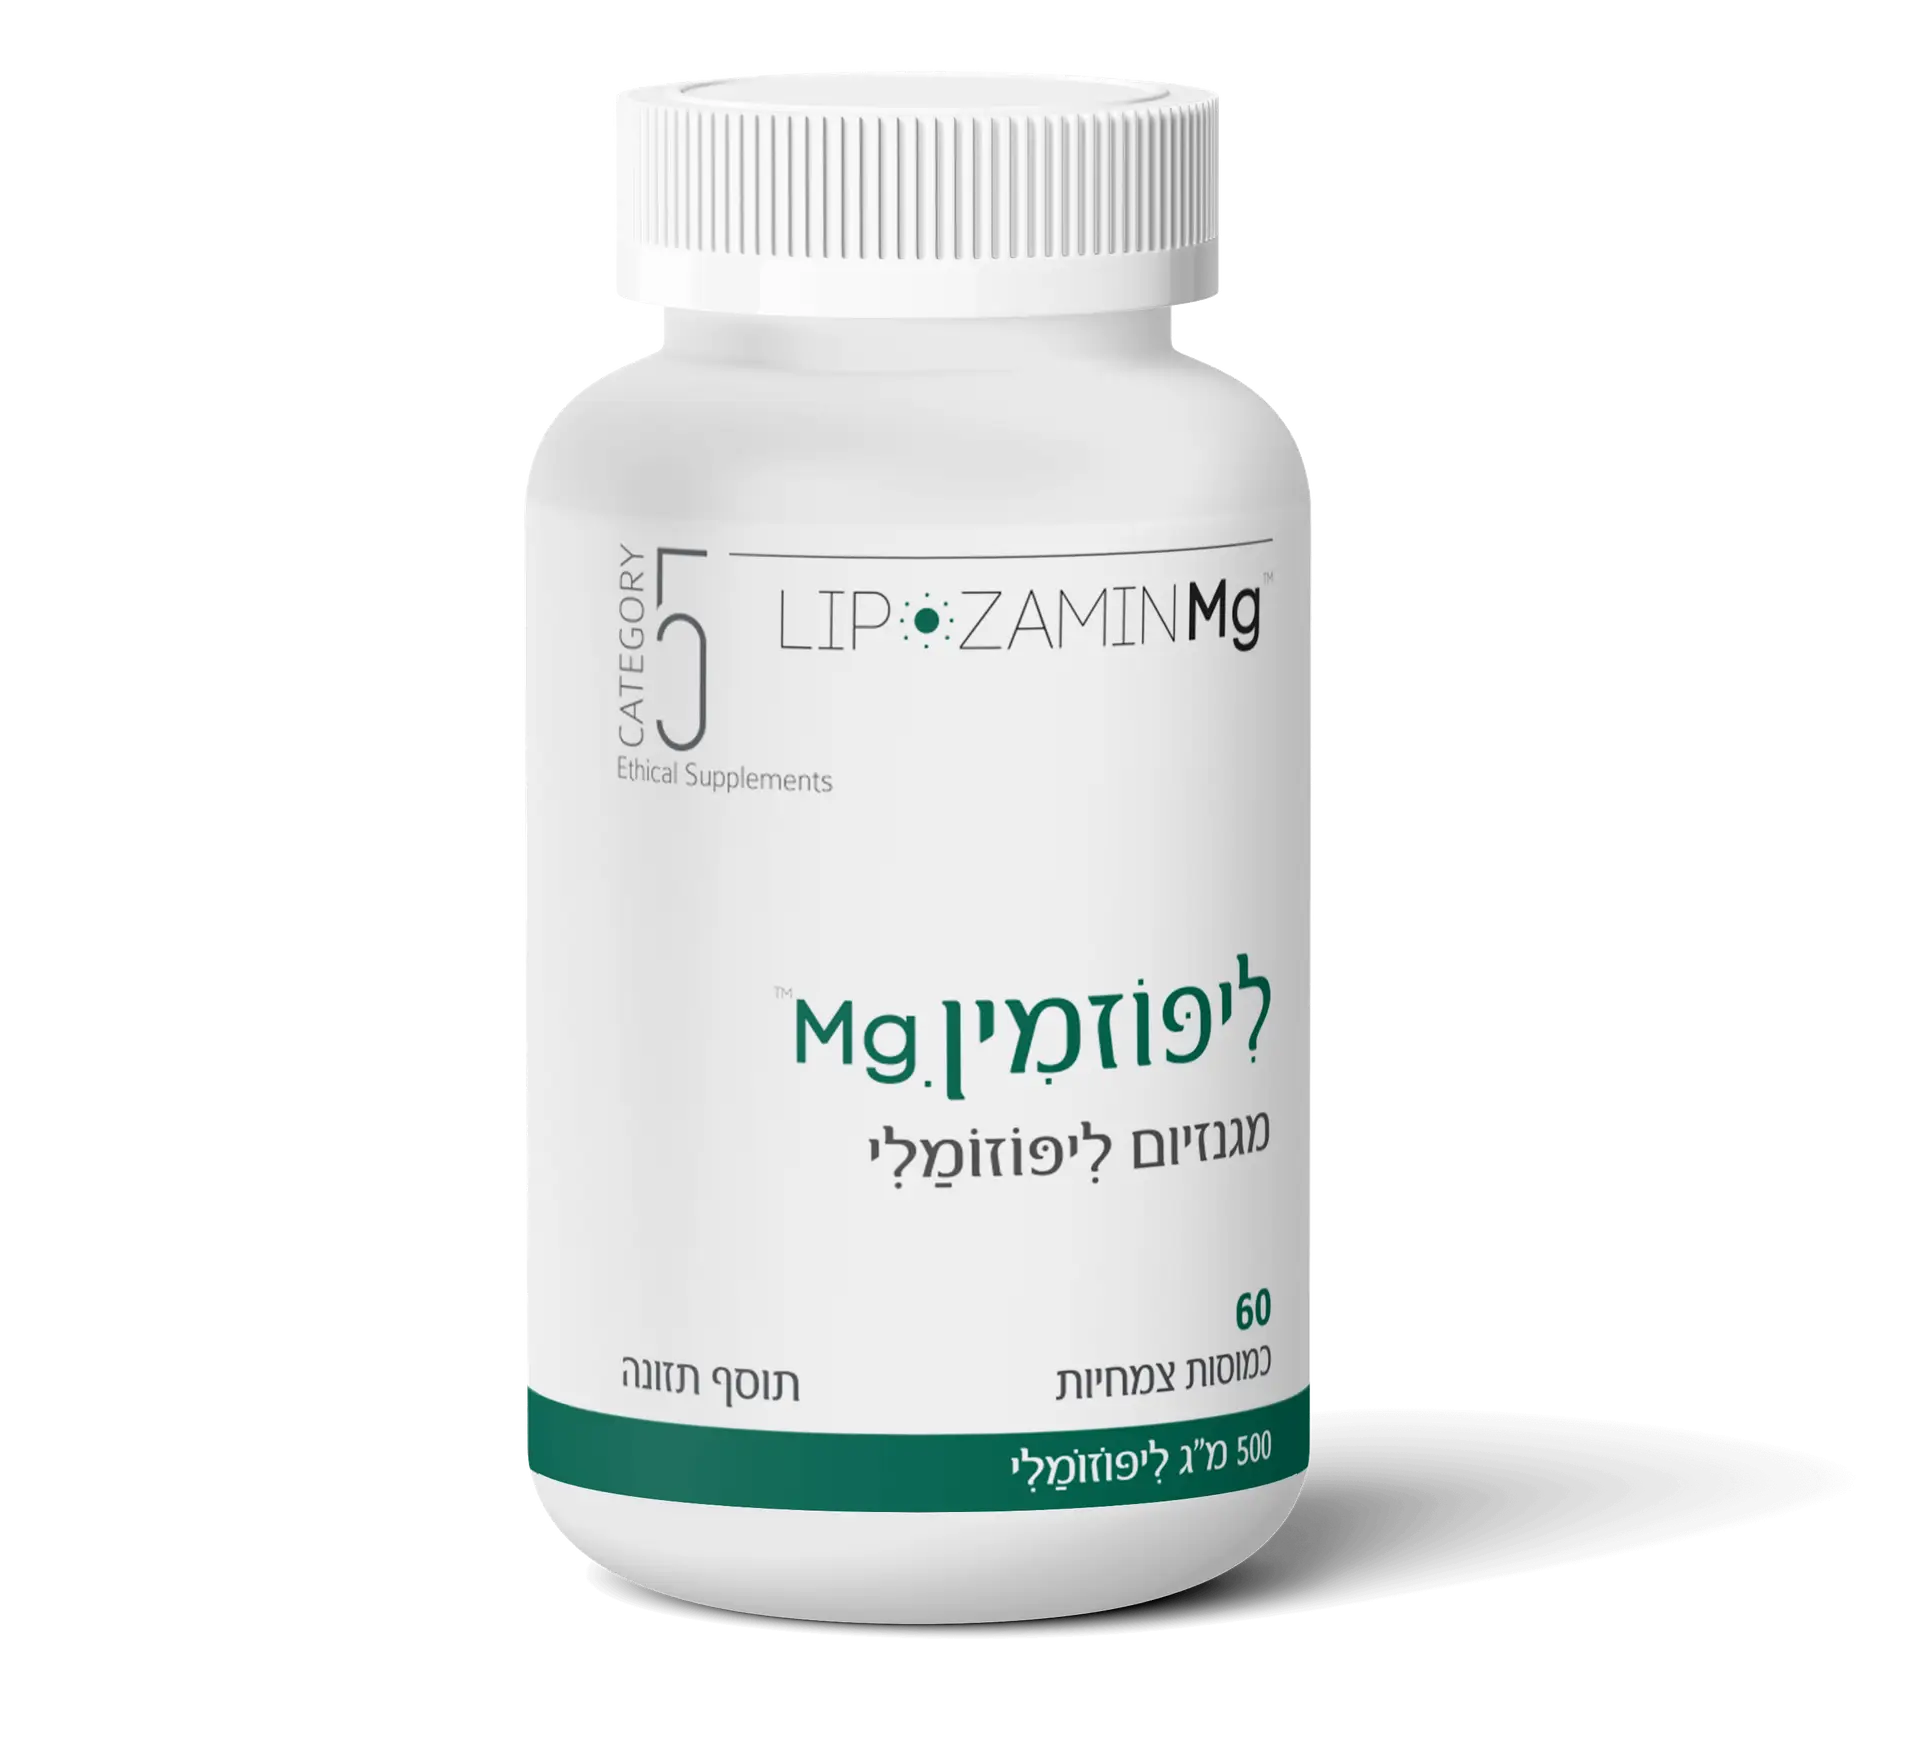 ליפוזמין Mg- קטגוריה 5 תוספים אתיים